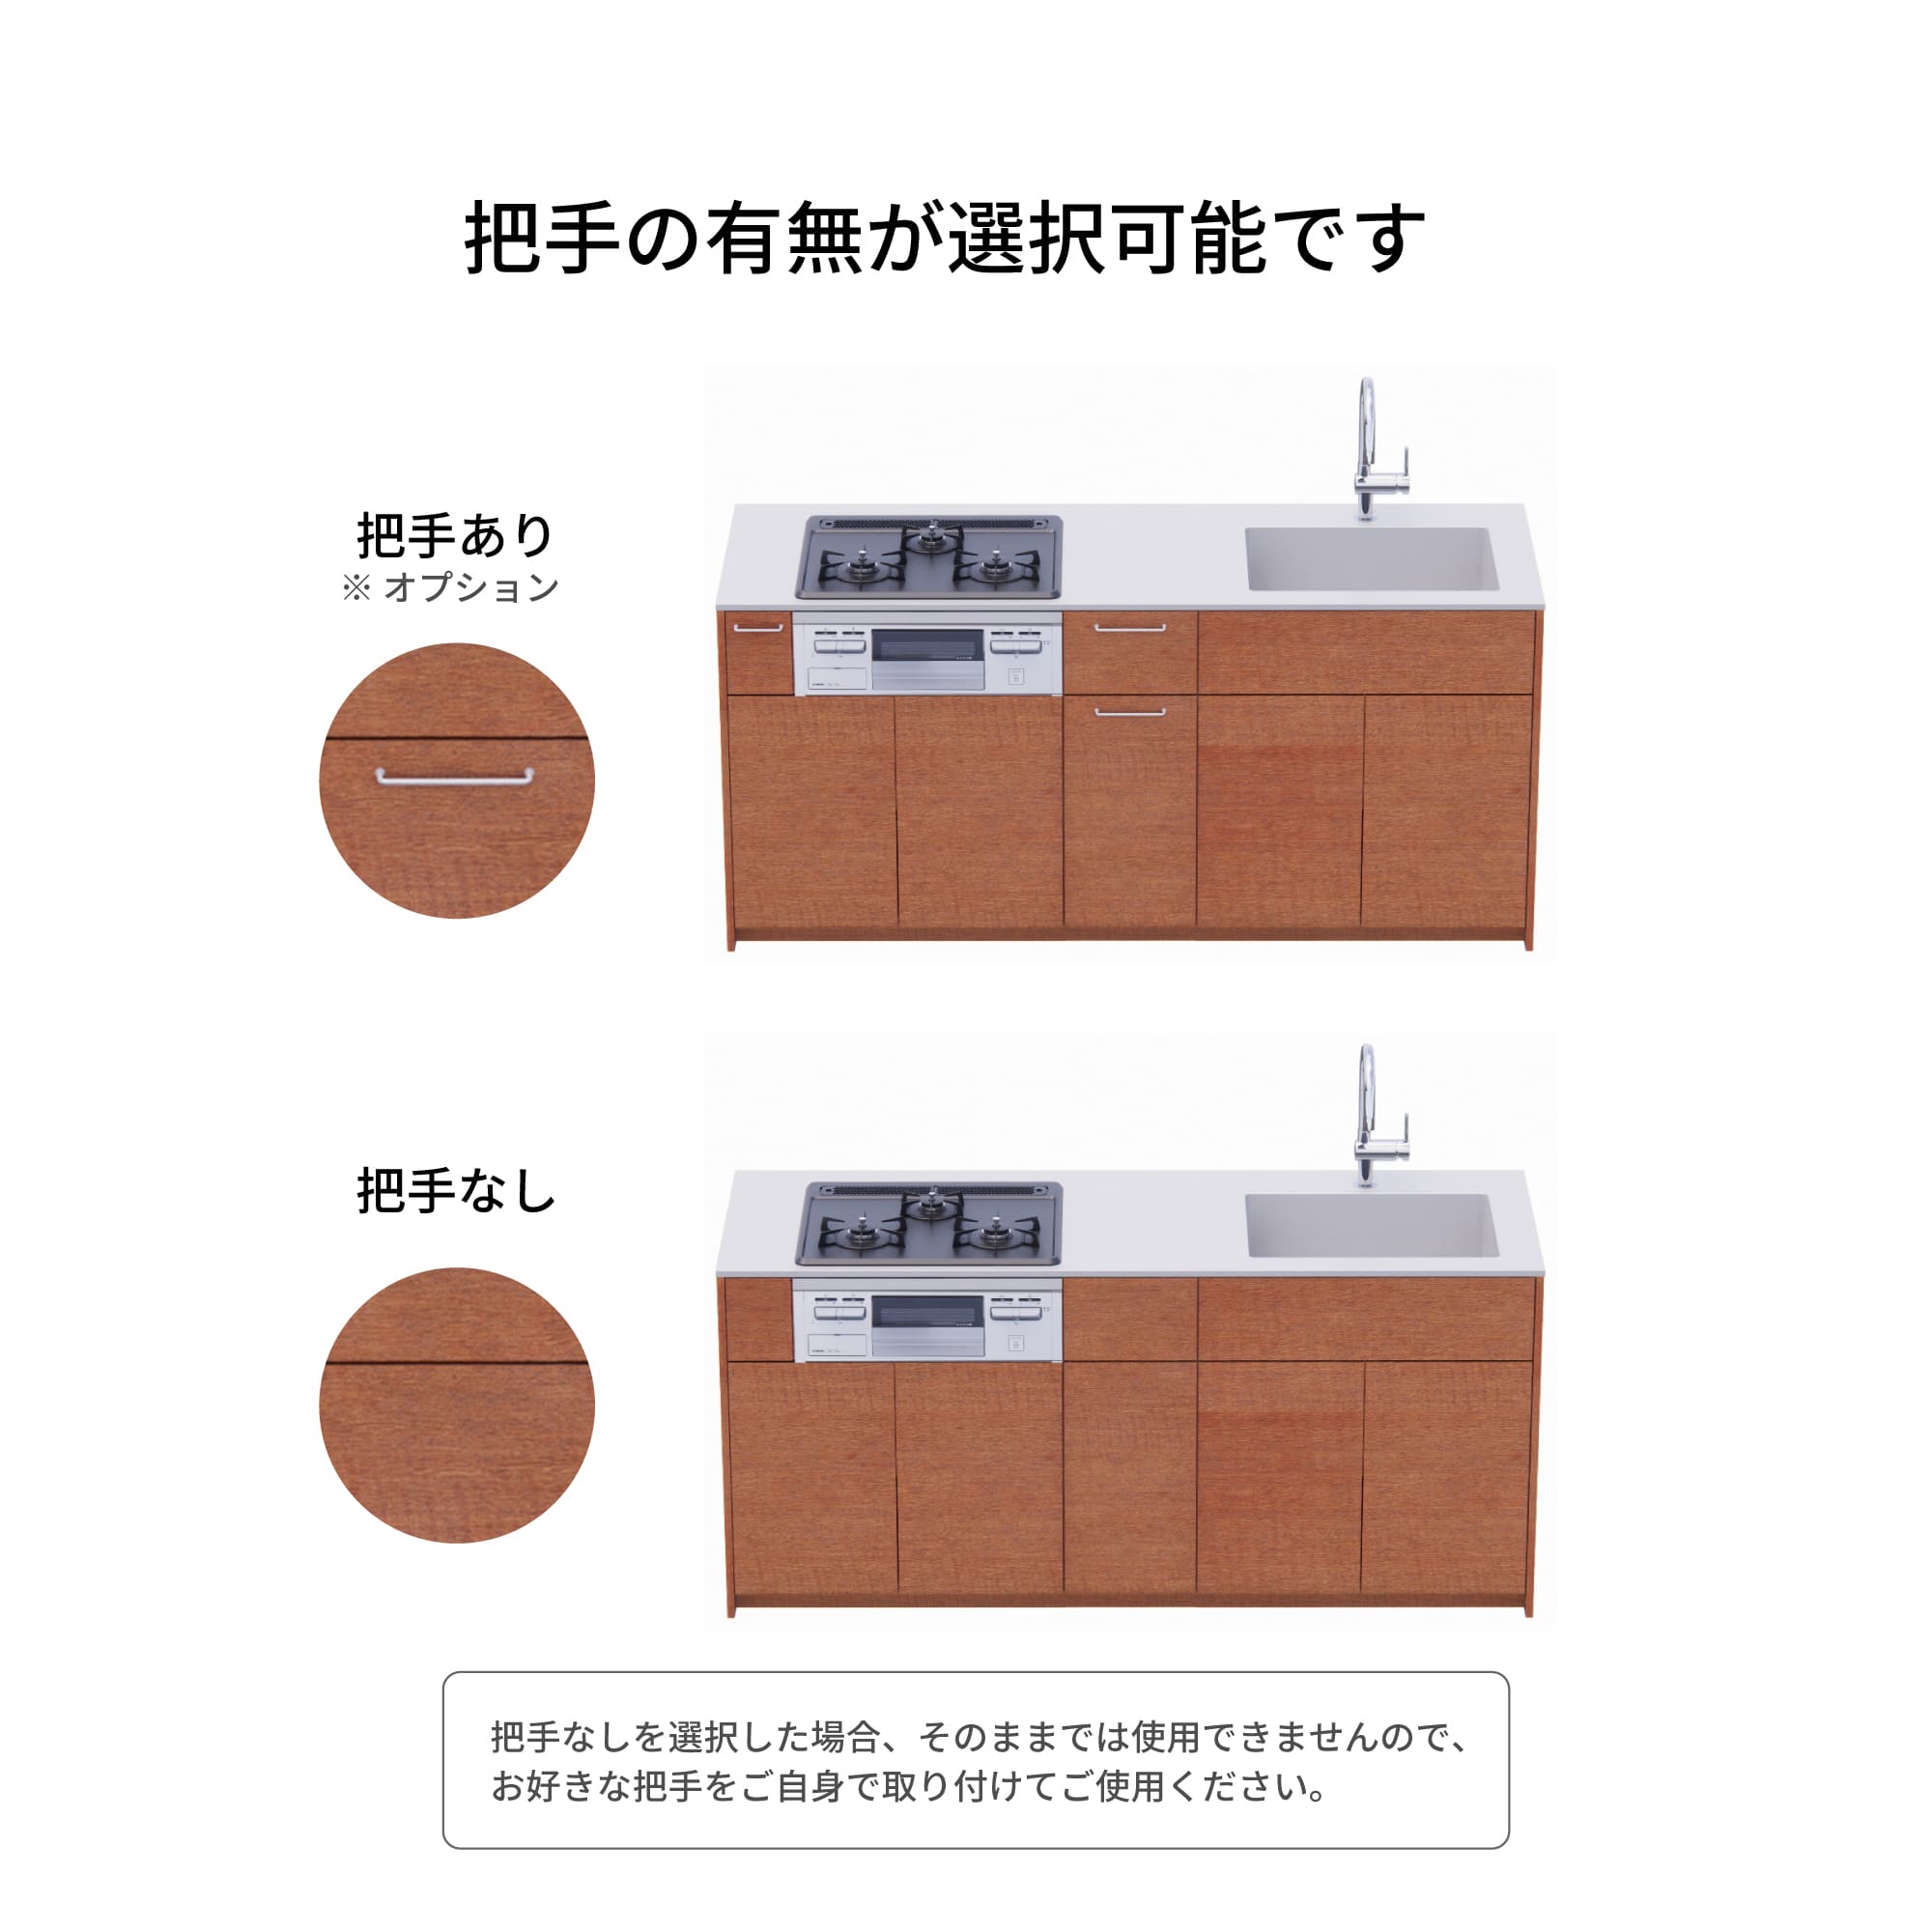 木製システムキッチン 壁付け型 W1990・コンロあり / オーブンなし / 食洗機あり KB-KC022-15-G183 把手の有無が選択可能です